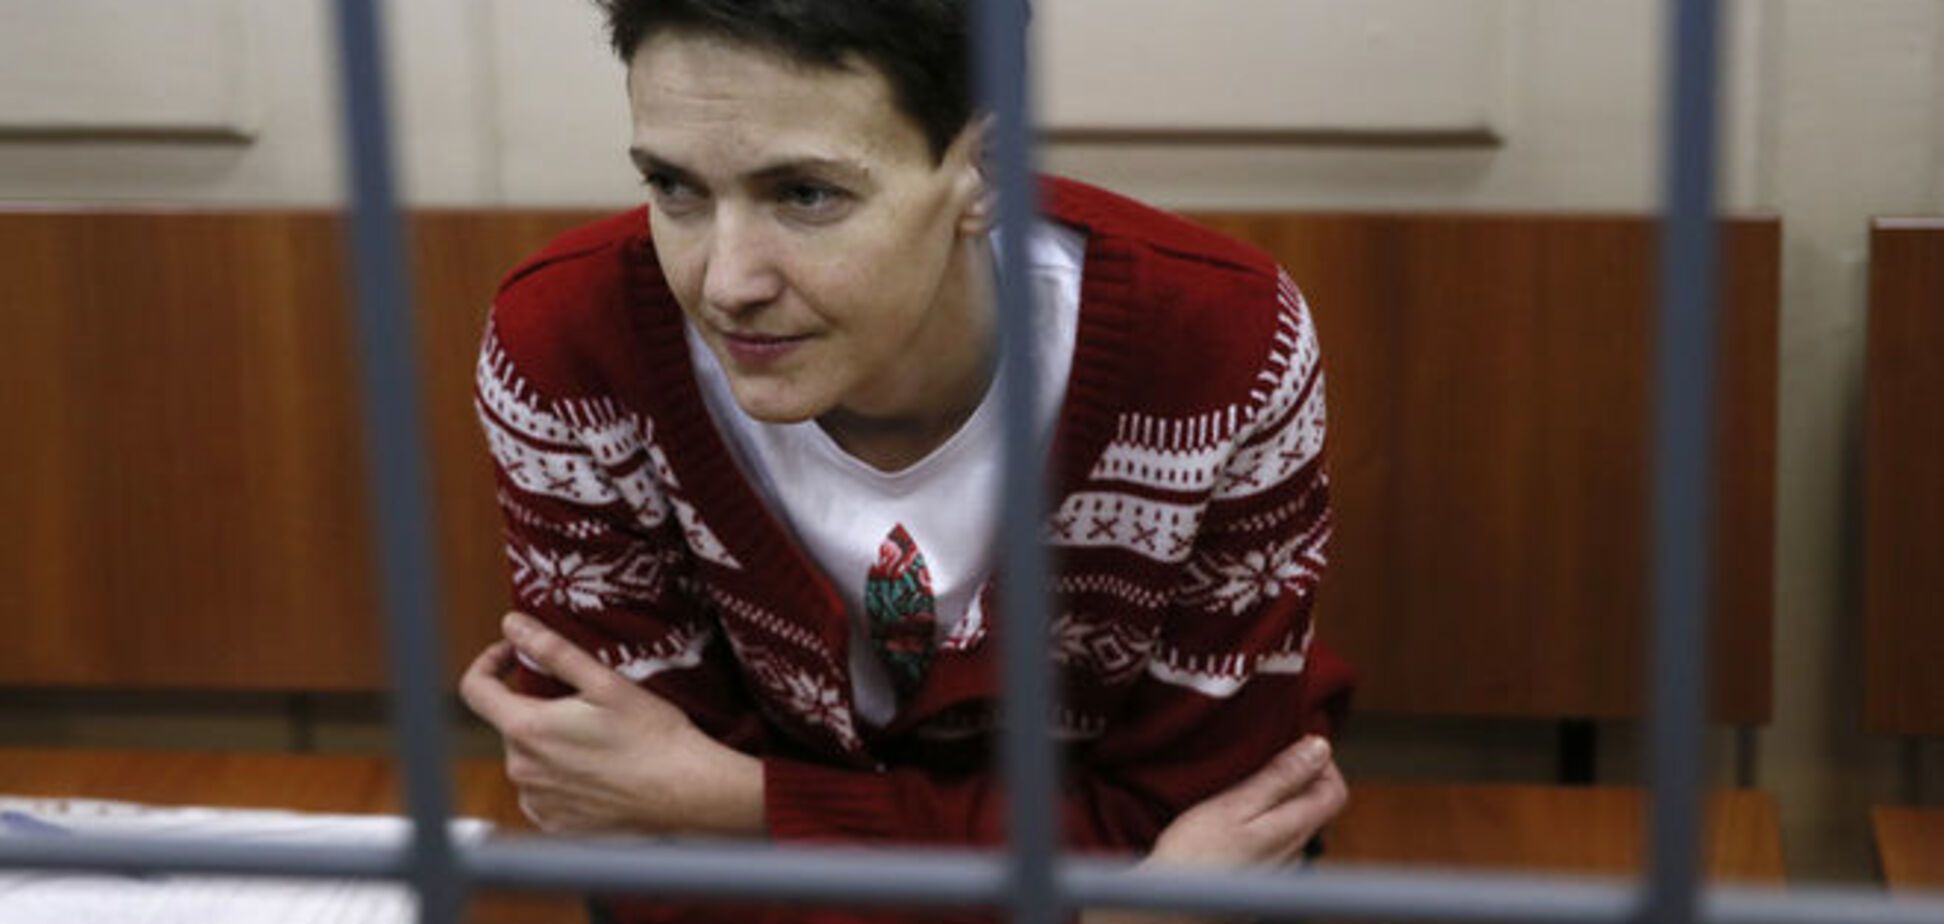 Освободить Савченко может только давление Запада на Путина - адвокат